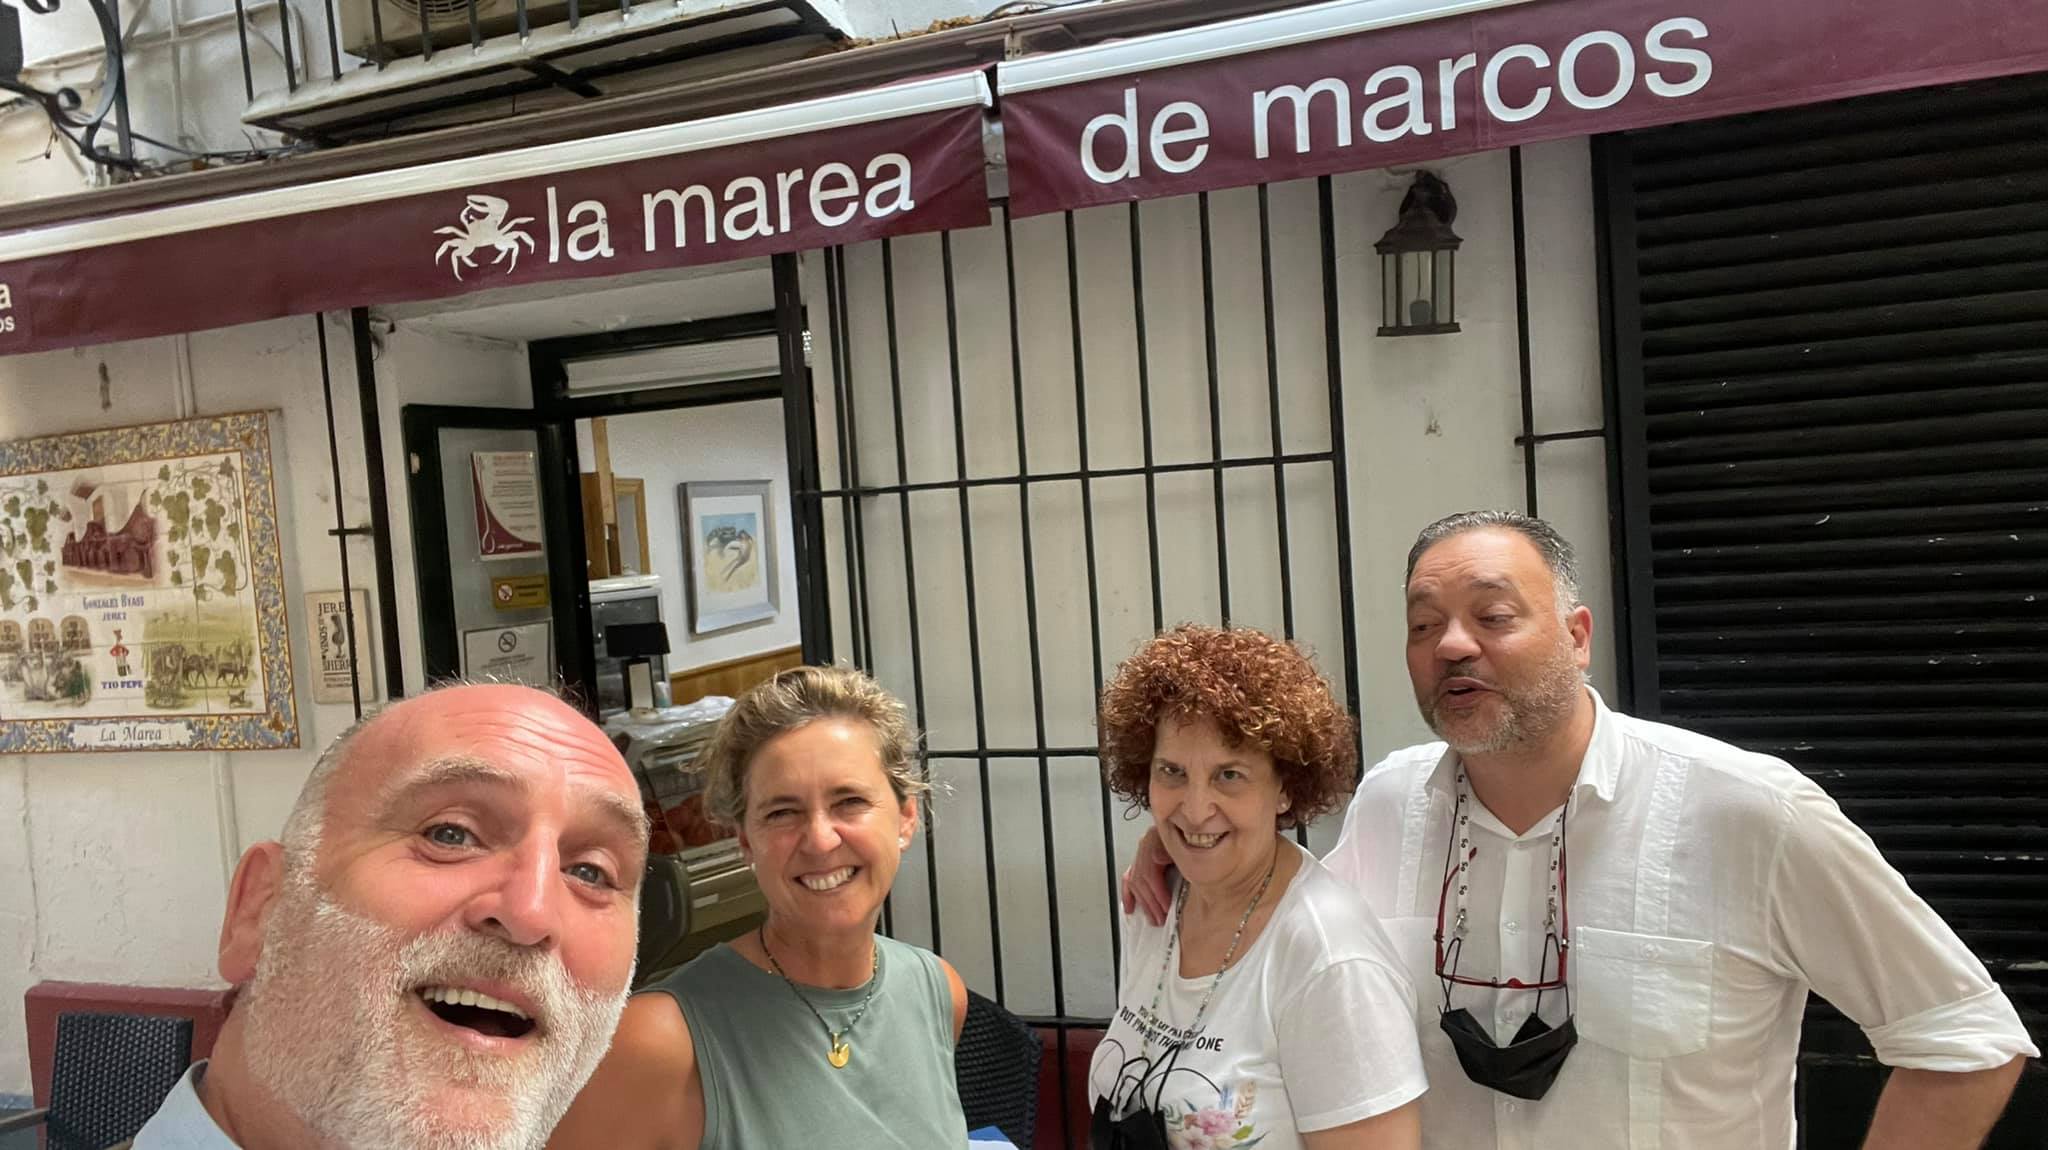 El chef José Andrés y su esposa Patricia con Marcos y Tere, del restaurante marisquería Marcos de Jerez